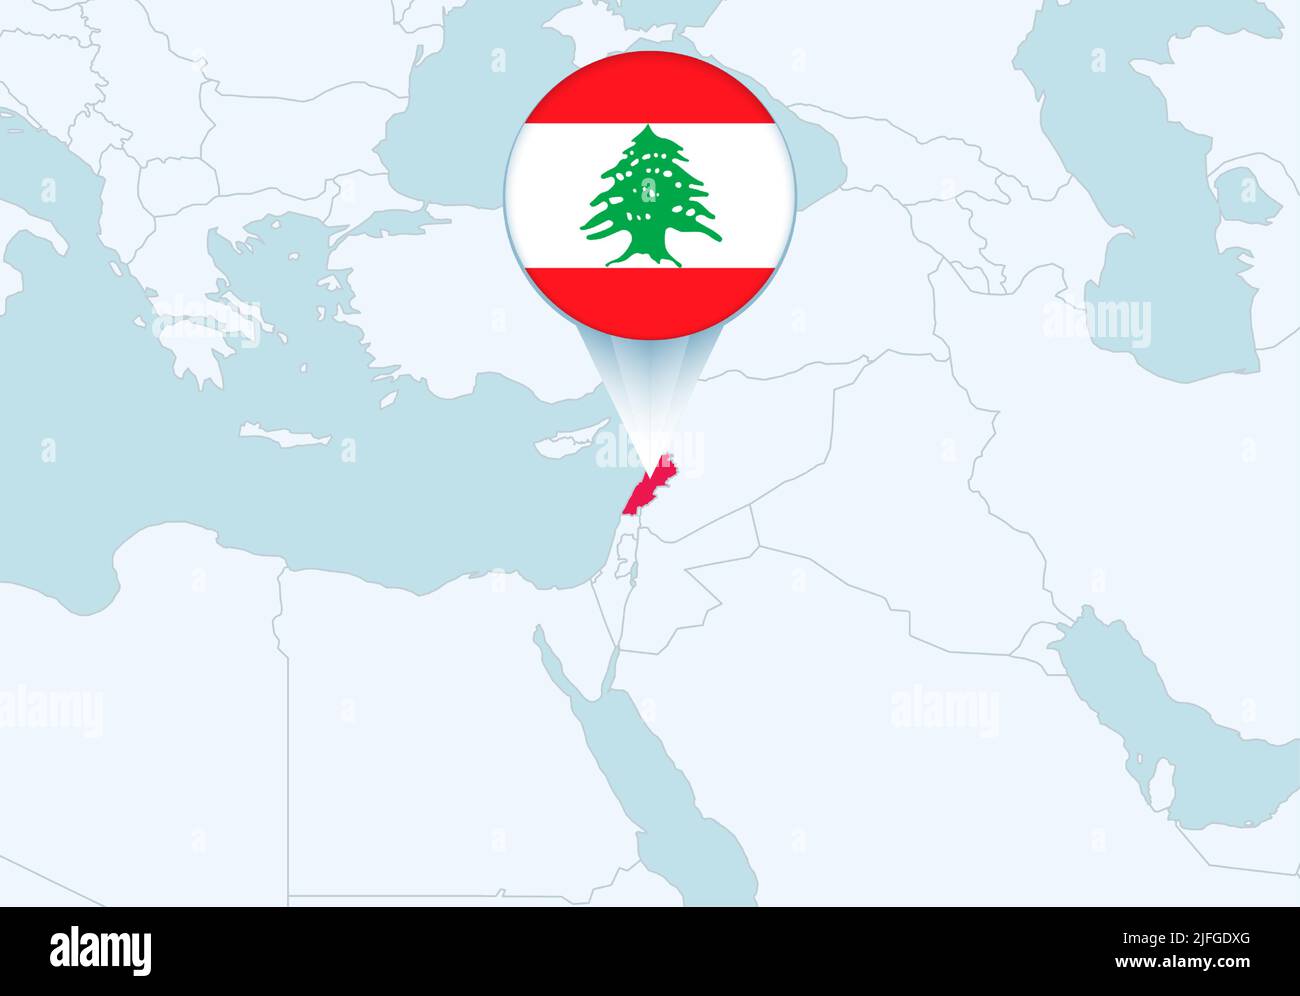 Asie avec carte du Liban sélectionnée et icône du drapeau du Liban. Carte vectorielle et indicateur. Illustration de Vecteur